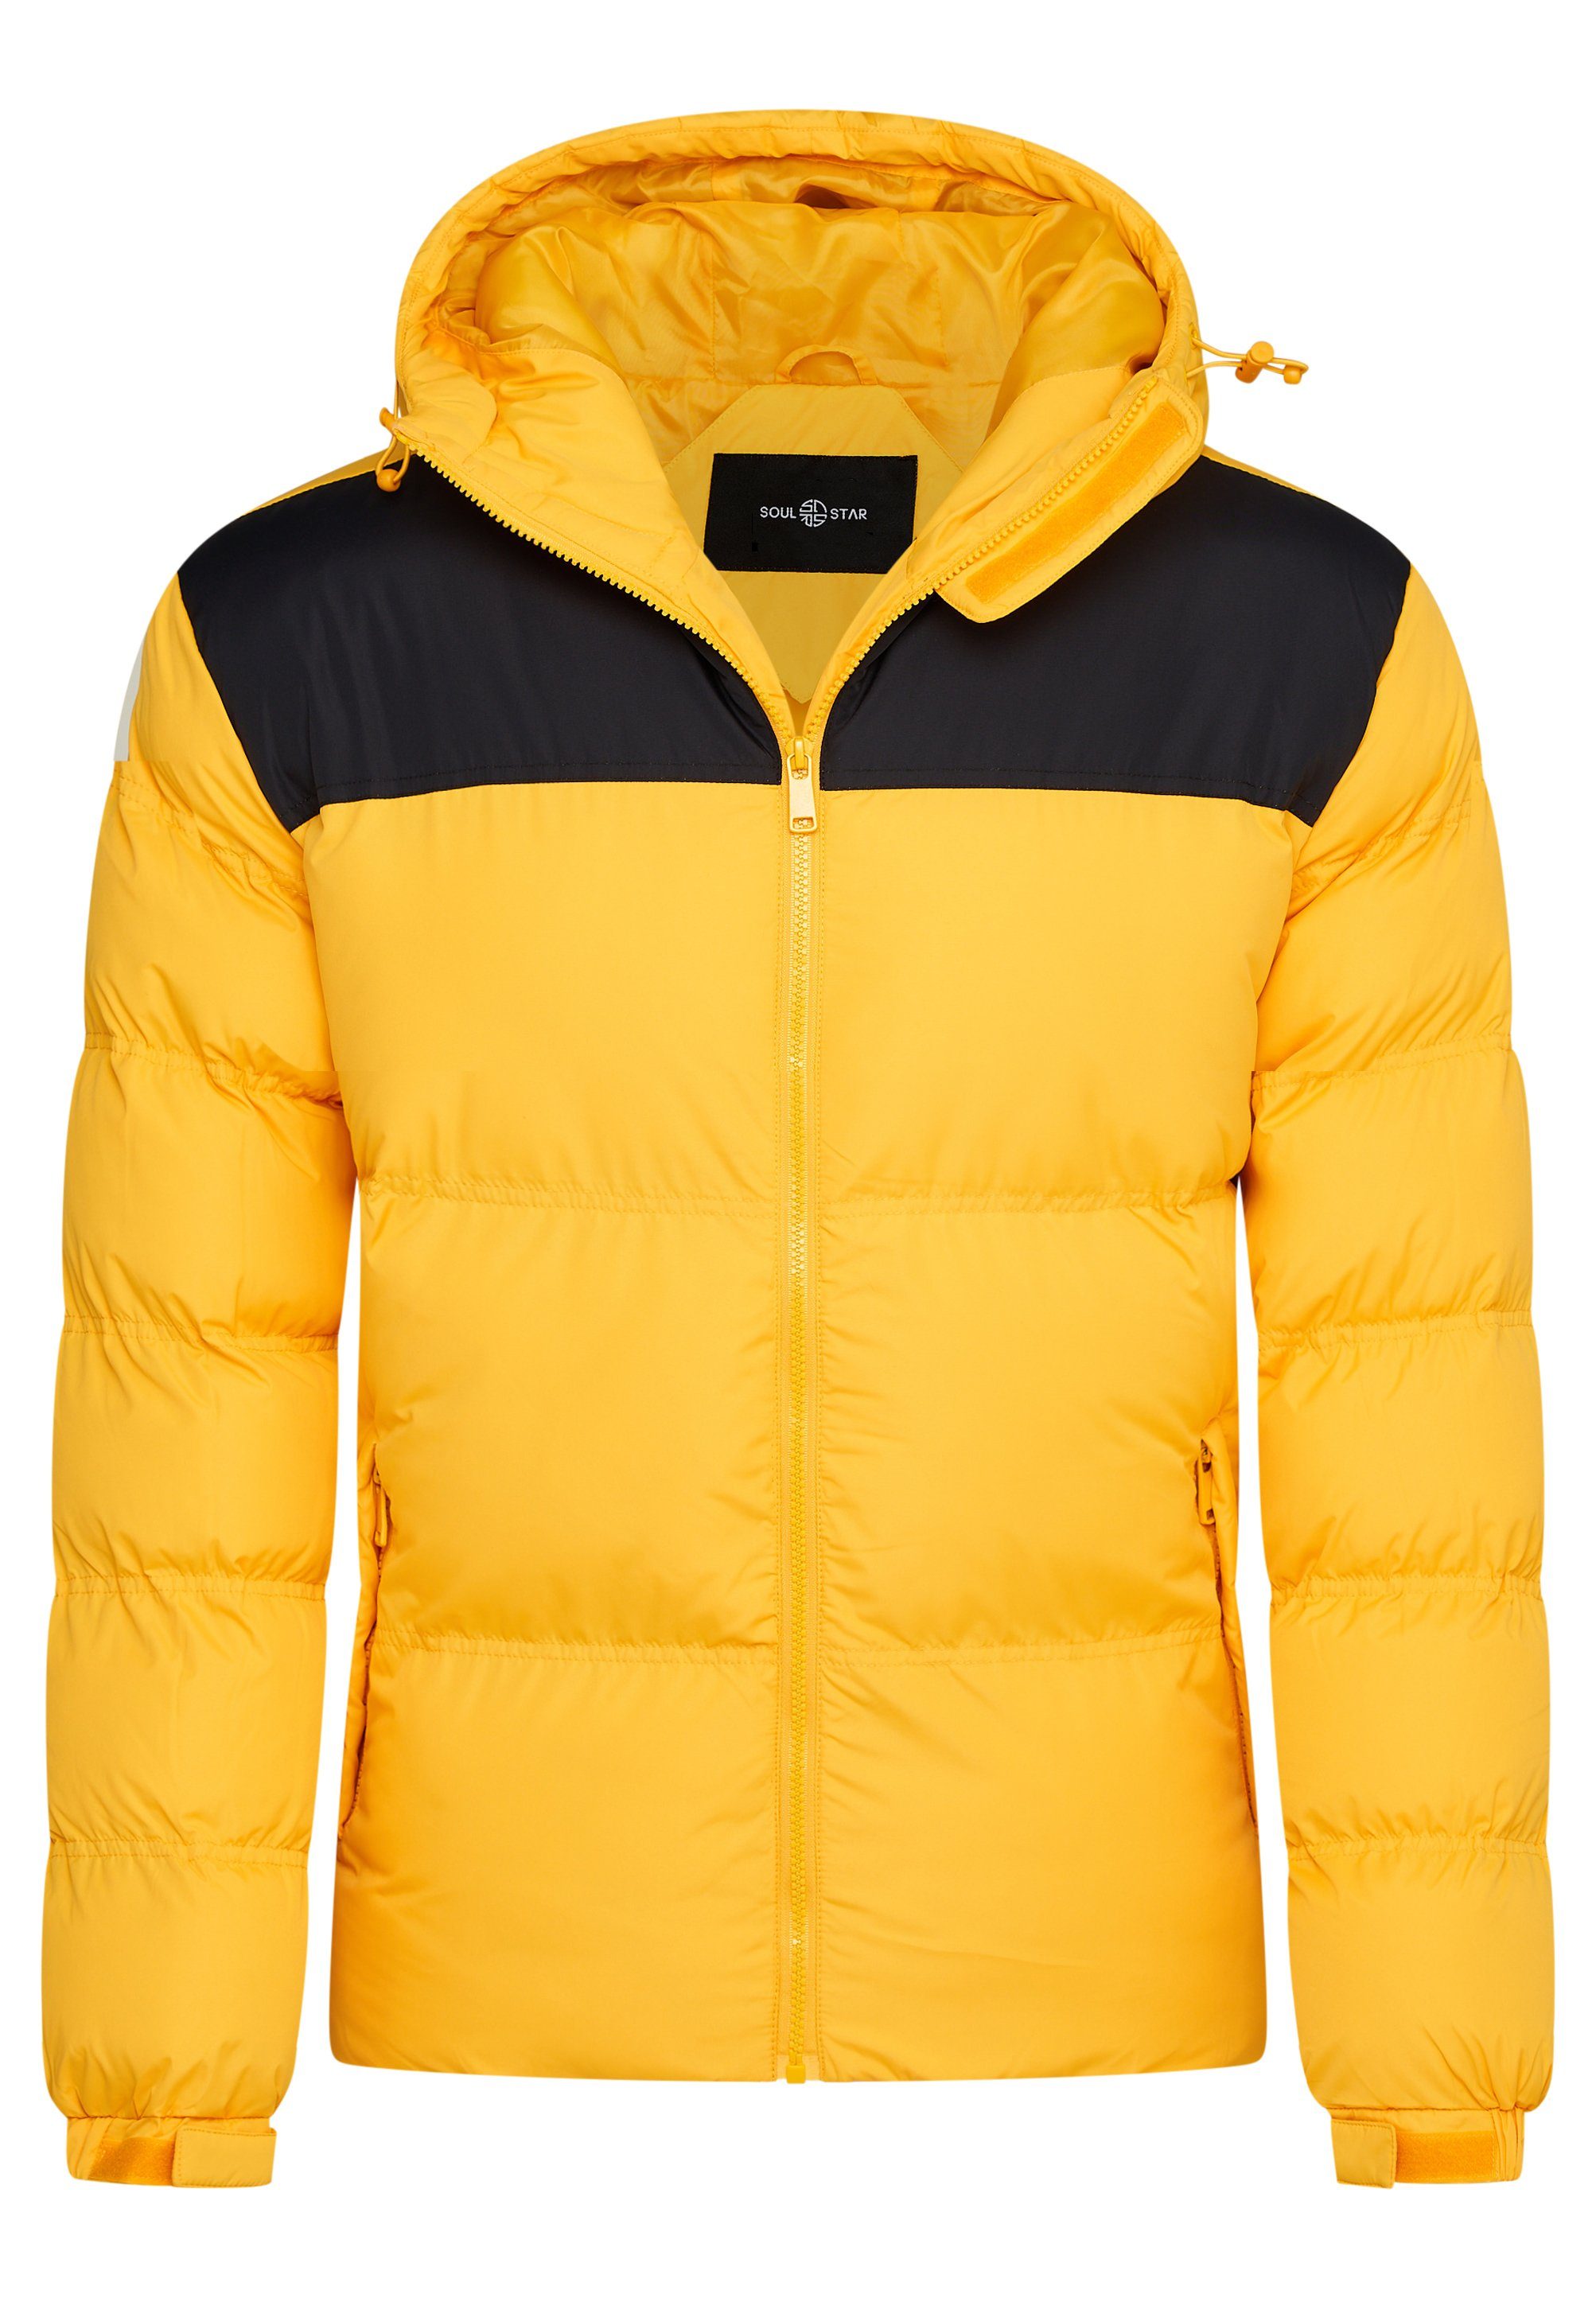 SOULSTAR Winterjacke S2KRAGERO Puffer Jacke mit Kapuze warme Steppjacke Panel-Gelb